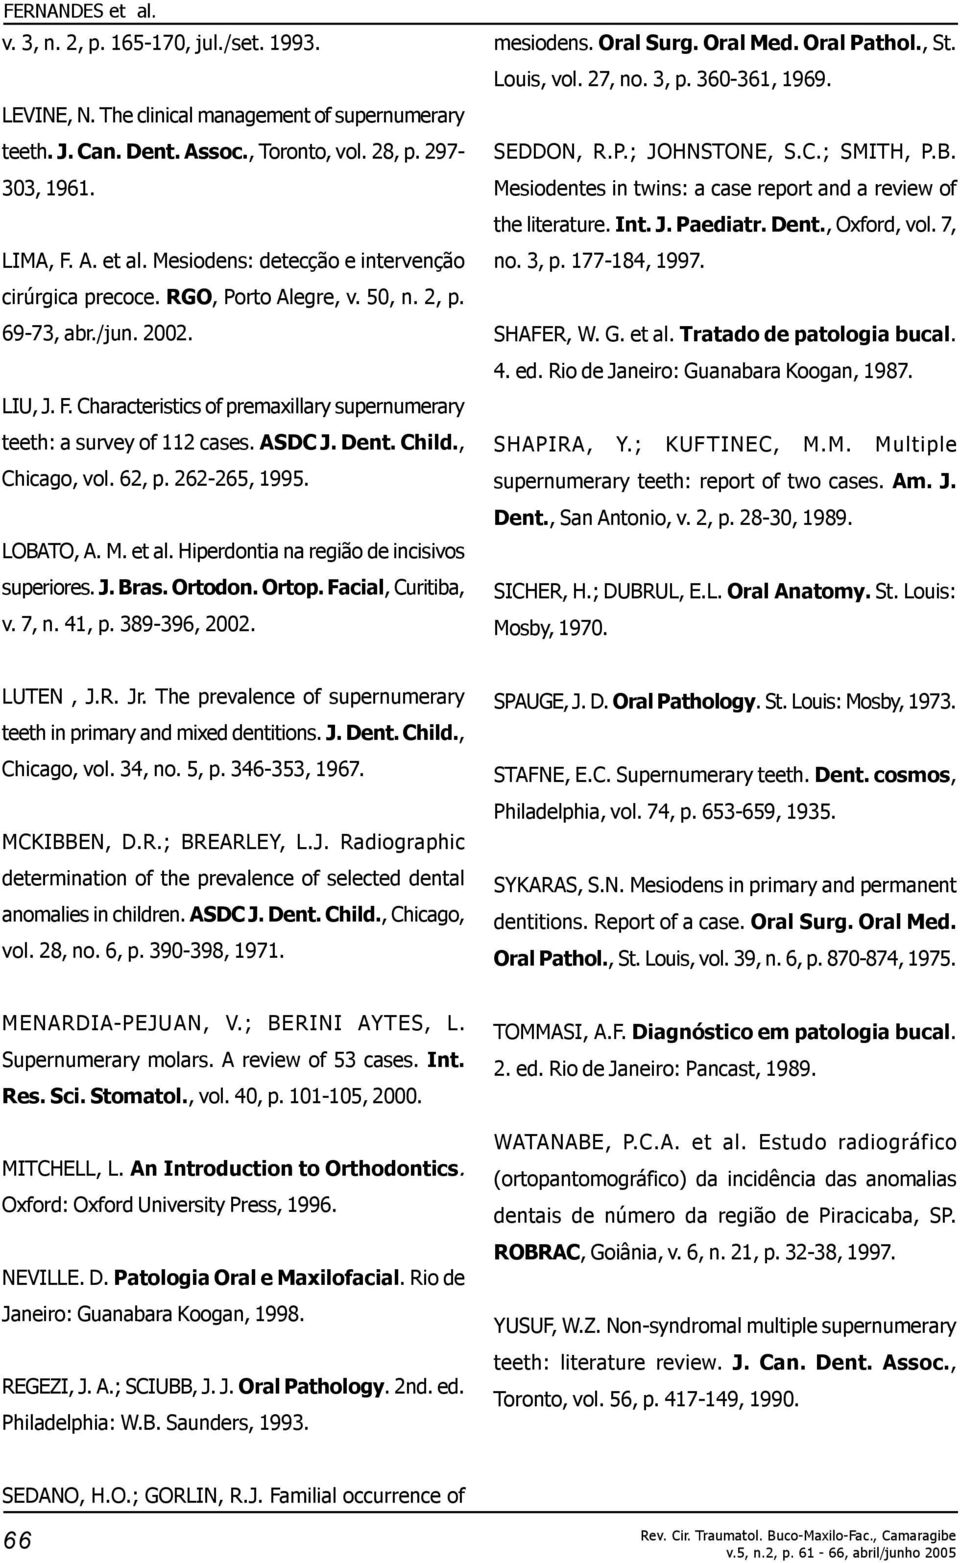 ASDC J. Dent. Child., Chicago, vol. 62, p. 262-265, 1995. LOBATO, A. M. et al. Hiperdontia na região de incisivos superiores. J. Bras. Ortodon. Ortop. Facial, Curitiba, v. 7, n. 41, p. 389-396, 2002.